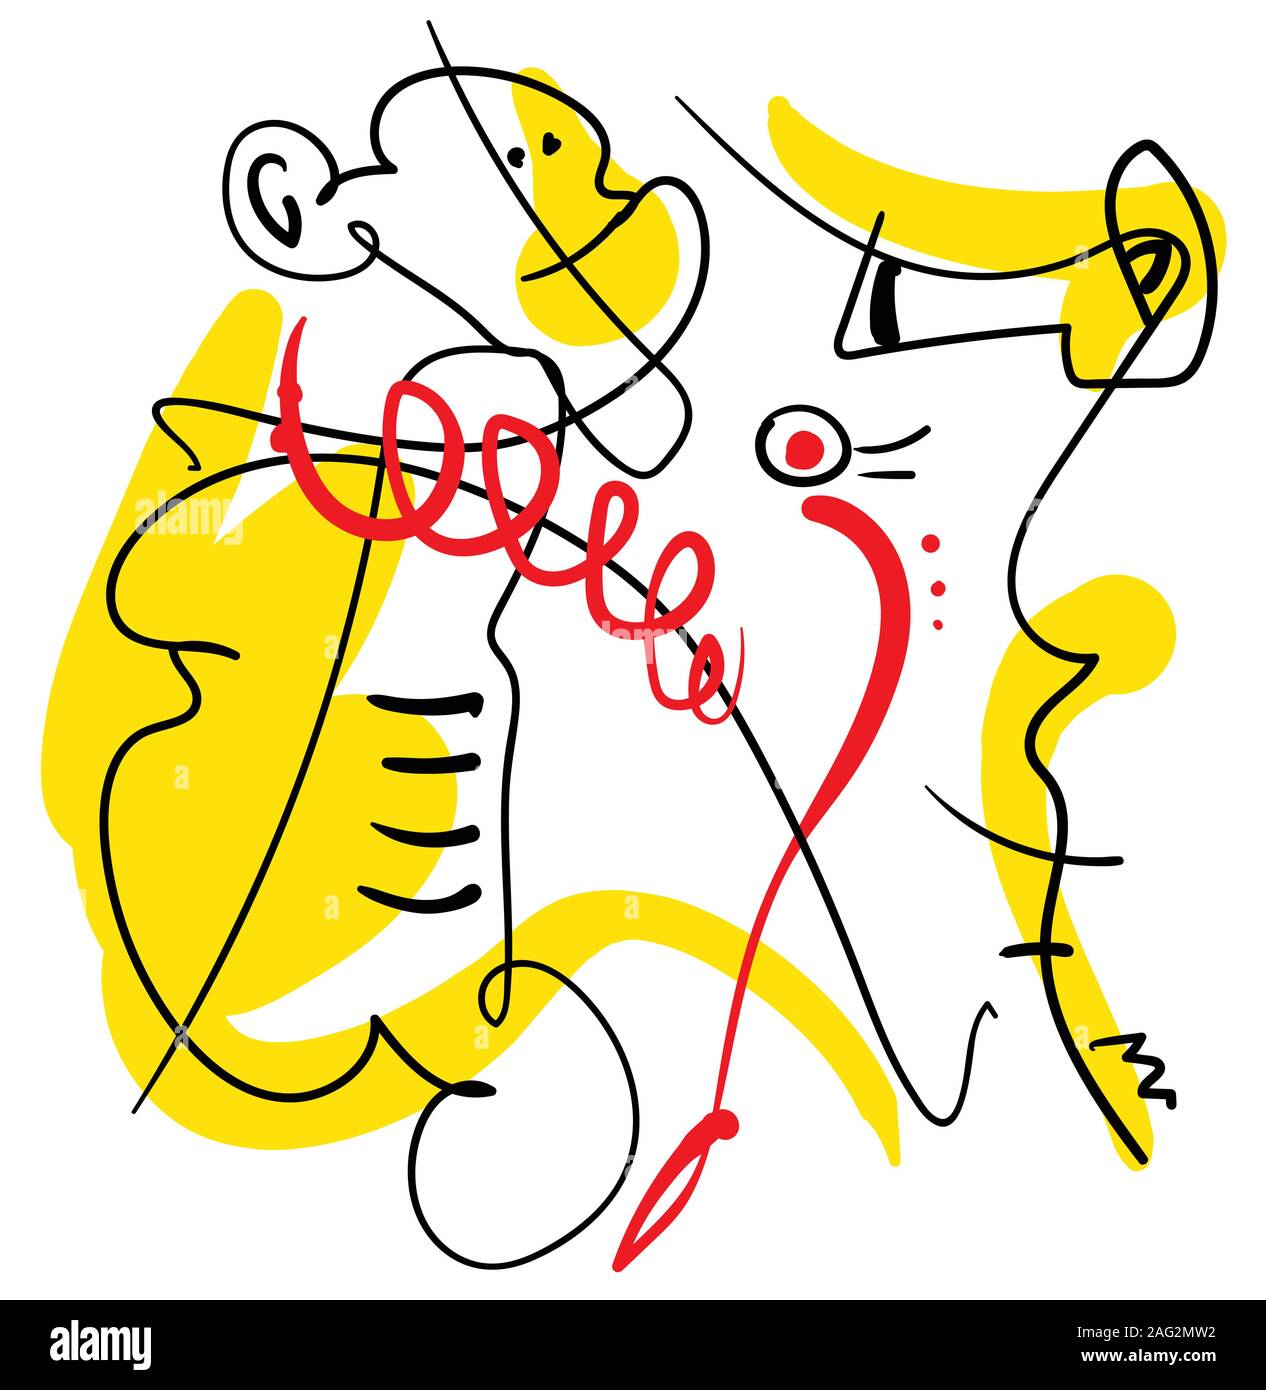 résumé une ligne composition contemporaine, noir, jaune et rouge, surréaliste minimaliste personne contour avec singe et cheval de mer Illustration de Vecteur